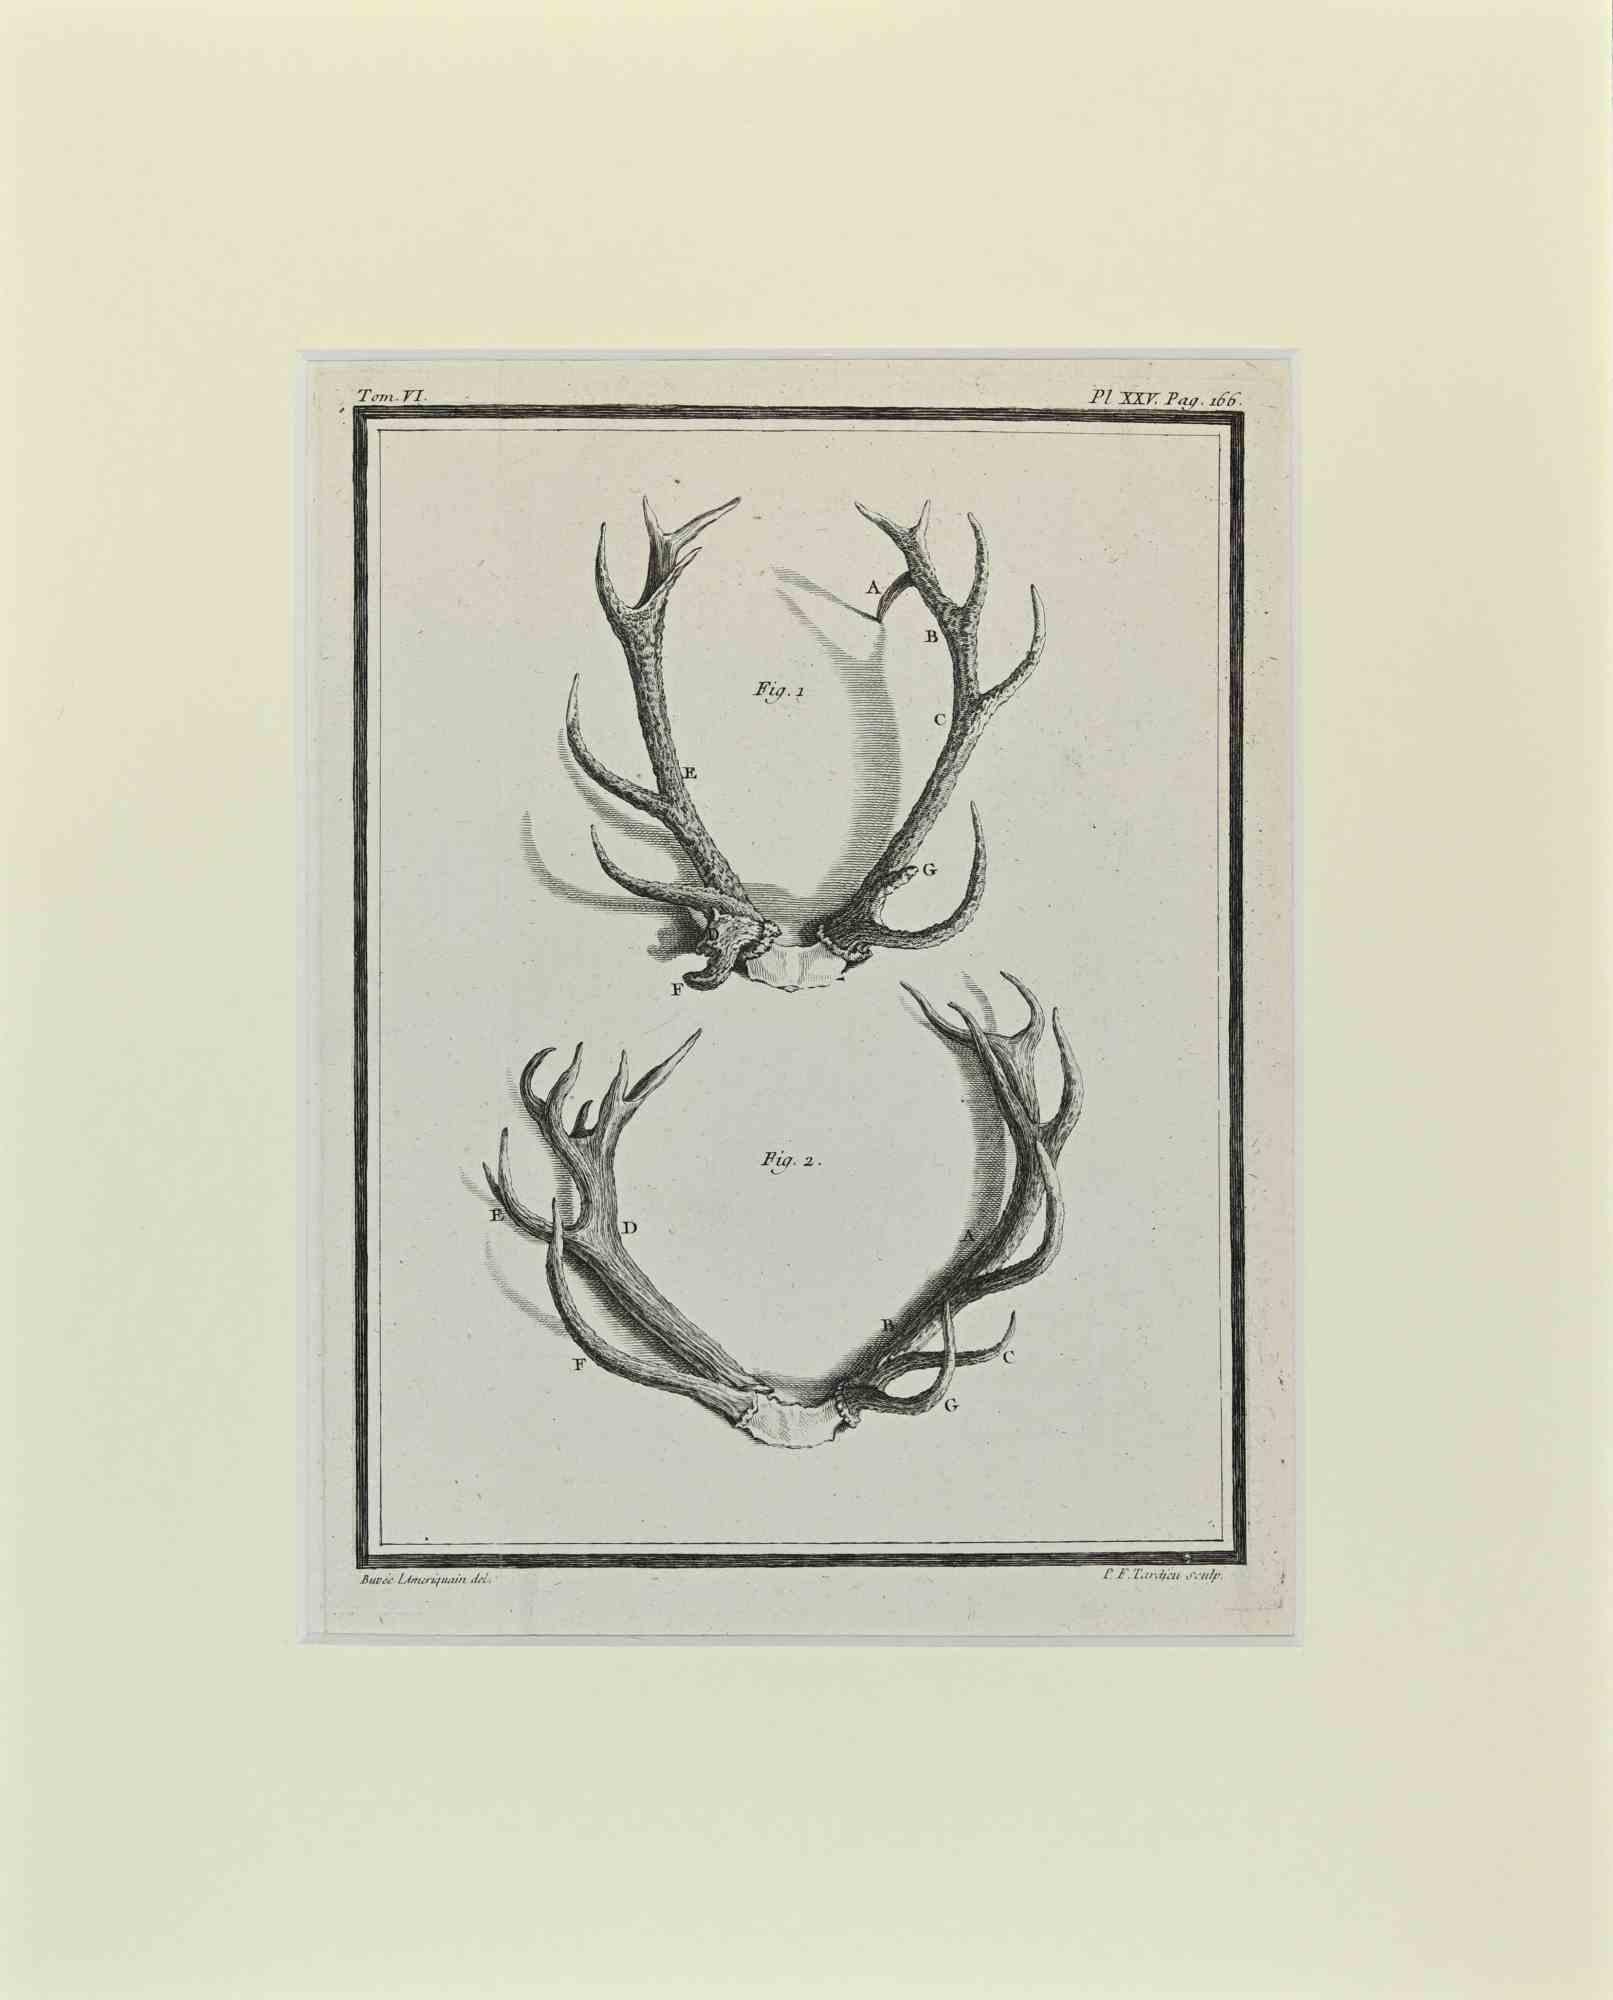 Cornamentas est une œuvre d'art réalisée par Buvée l'Américain en 1771.  

Gravure à l'eau-forte B./W. sur papier ivoire. Signé sur la plaque dans la marge inférieure gauche.

L'œuvre est collée sur du carton. Dimensions totales : 35x28